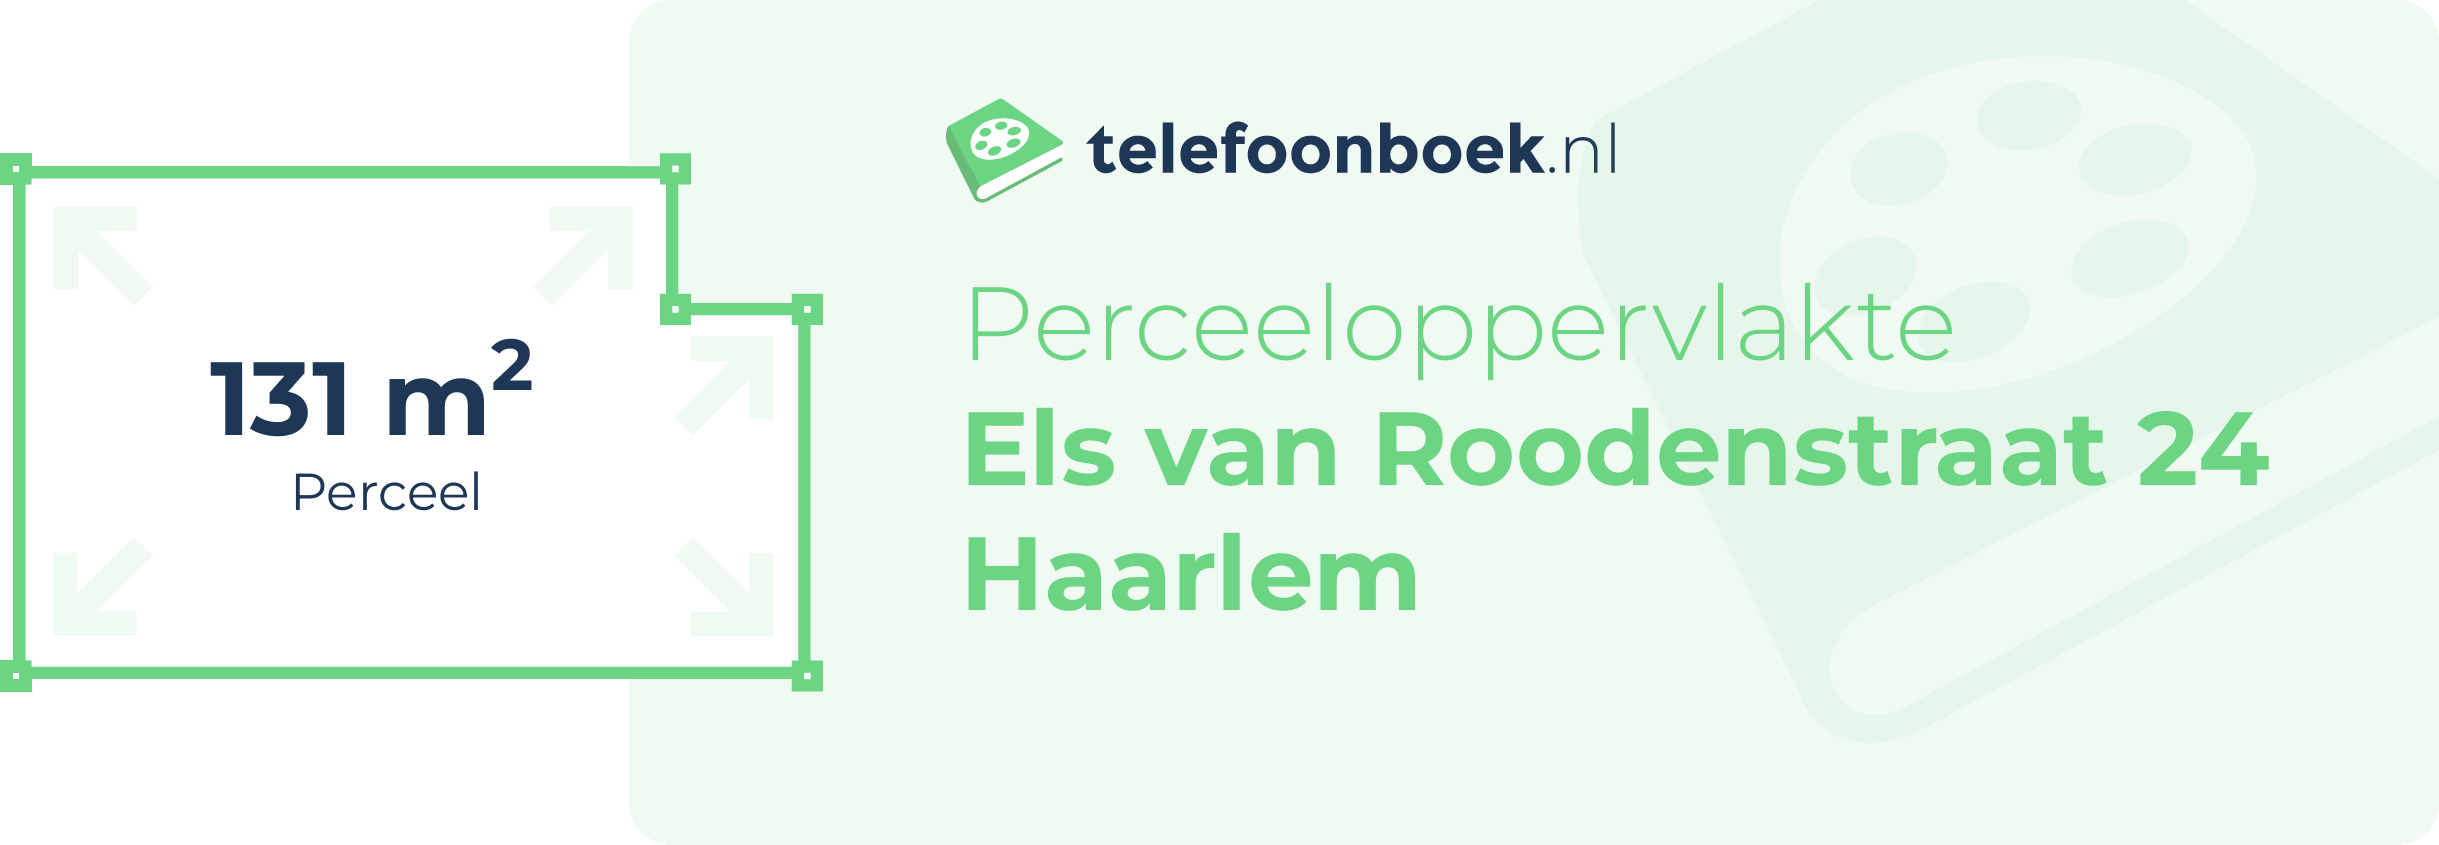 Perceeloppervlakte Els Van Roodenstraat 24 Haarlem